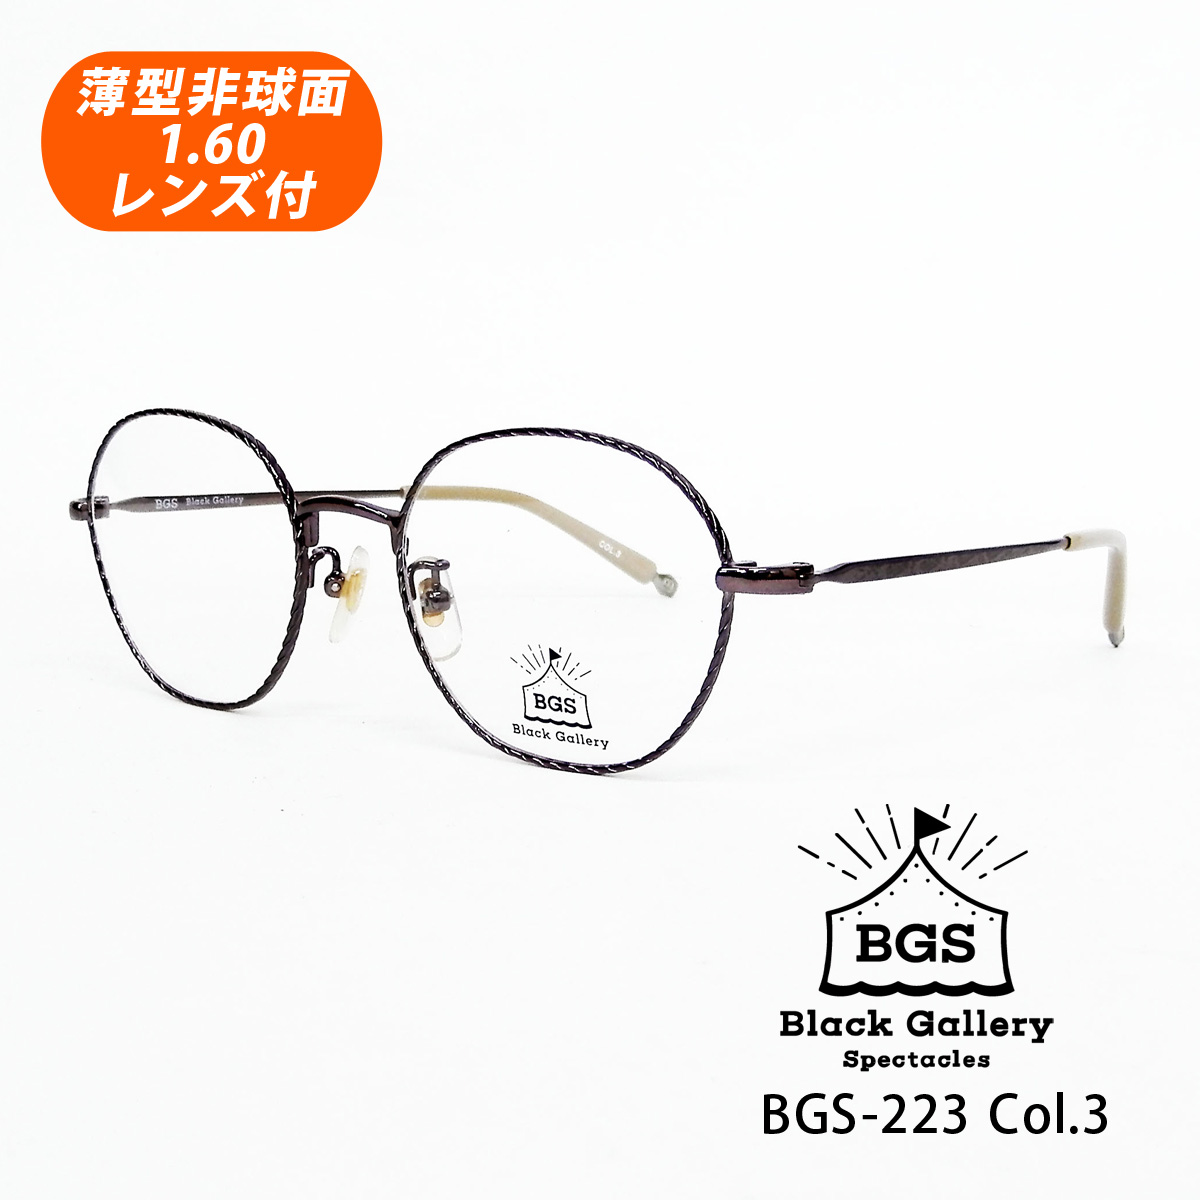 BGS 至上 世界の人気ブランド Black Gallery Spectacles HOYA薄型非球面1.60レンズ付 ブラックギャラリー 50サイズ Col.3 BGS-223 メガネセット クラシックモデル モーヴパープル